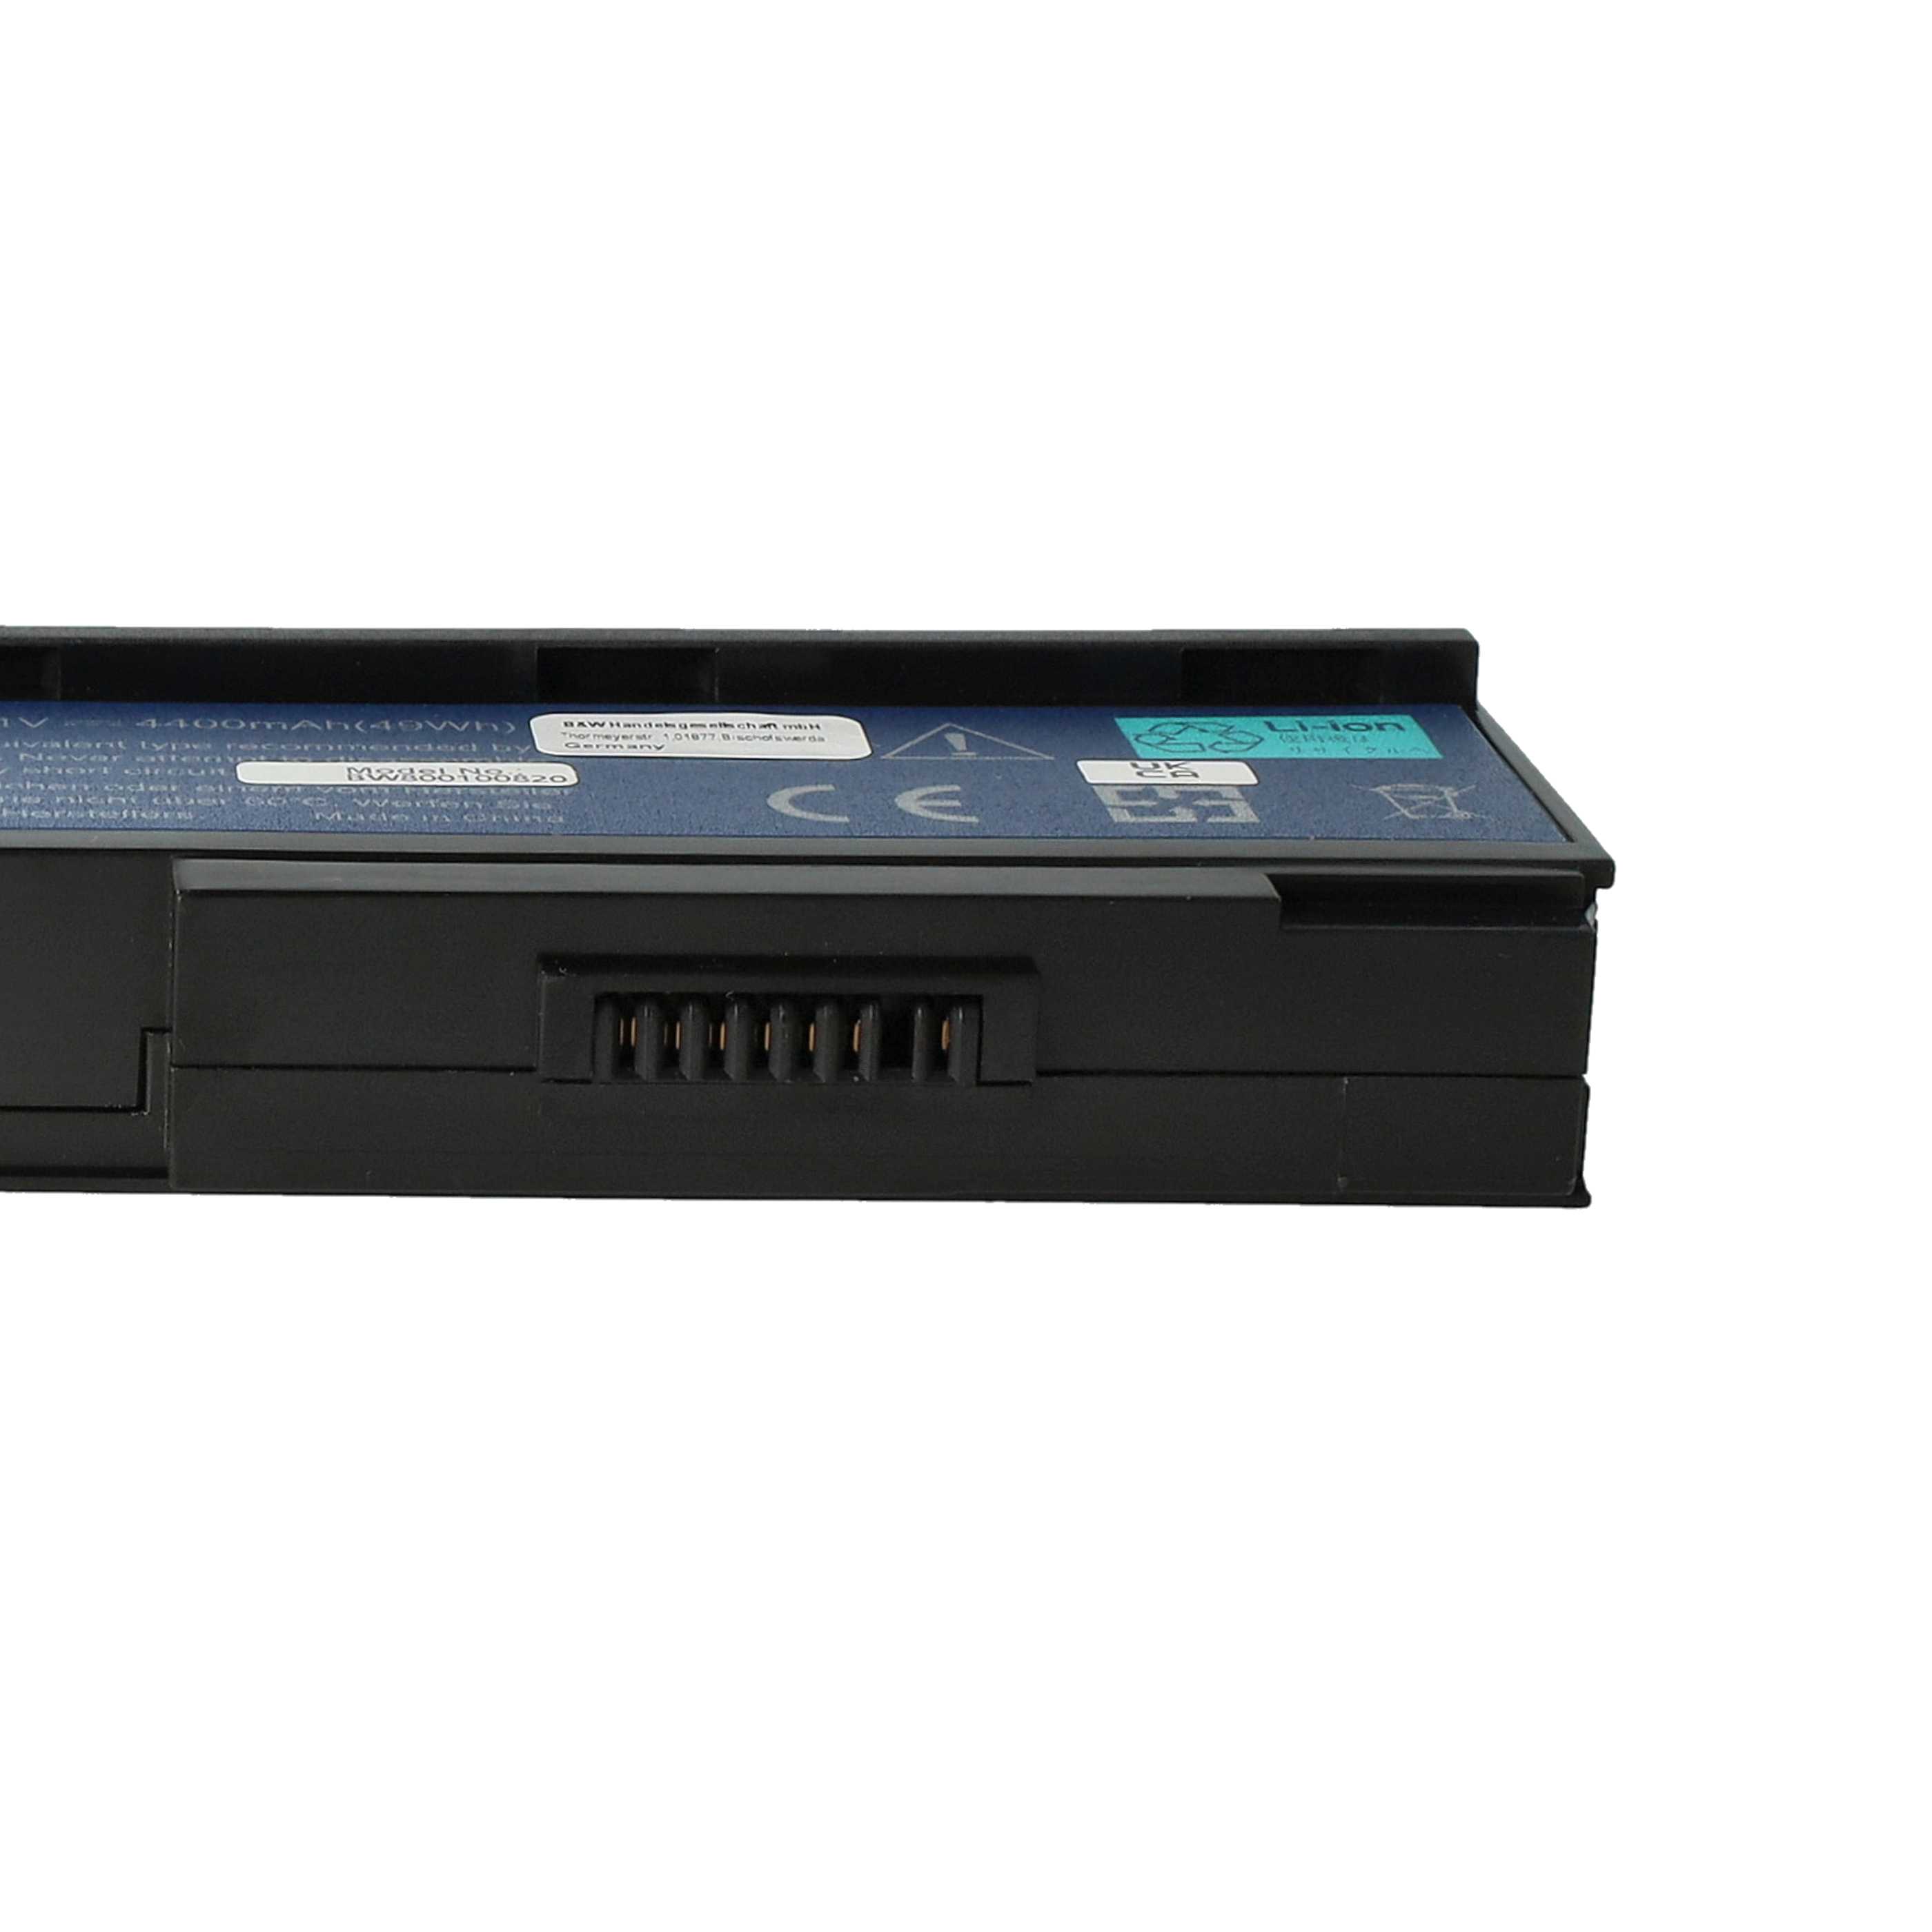 Akumulator do laptopa zamiennik Acer 934T2210F, BT.00603.012, BT.00604.006 - 4400 mAh 11,1 V Li-Ion, czarny